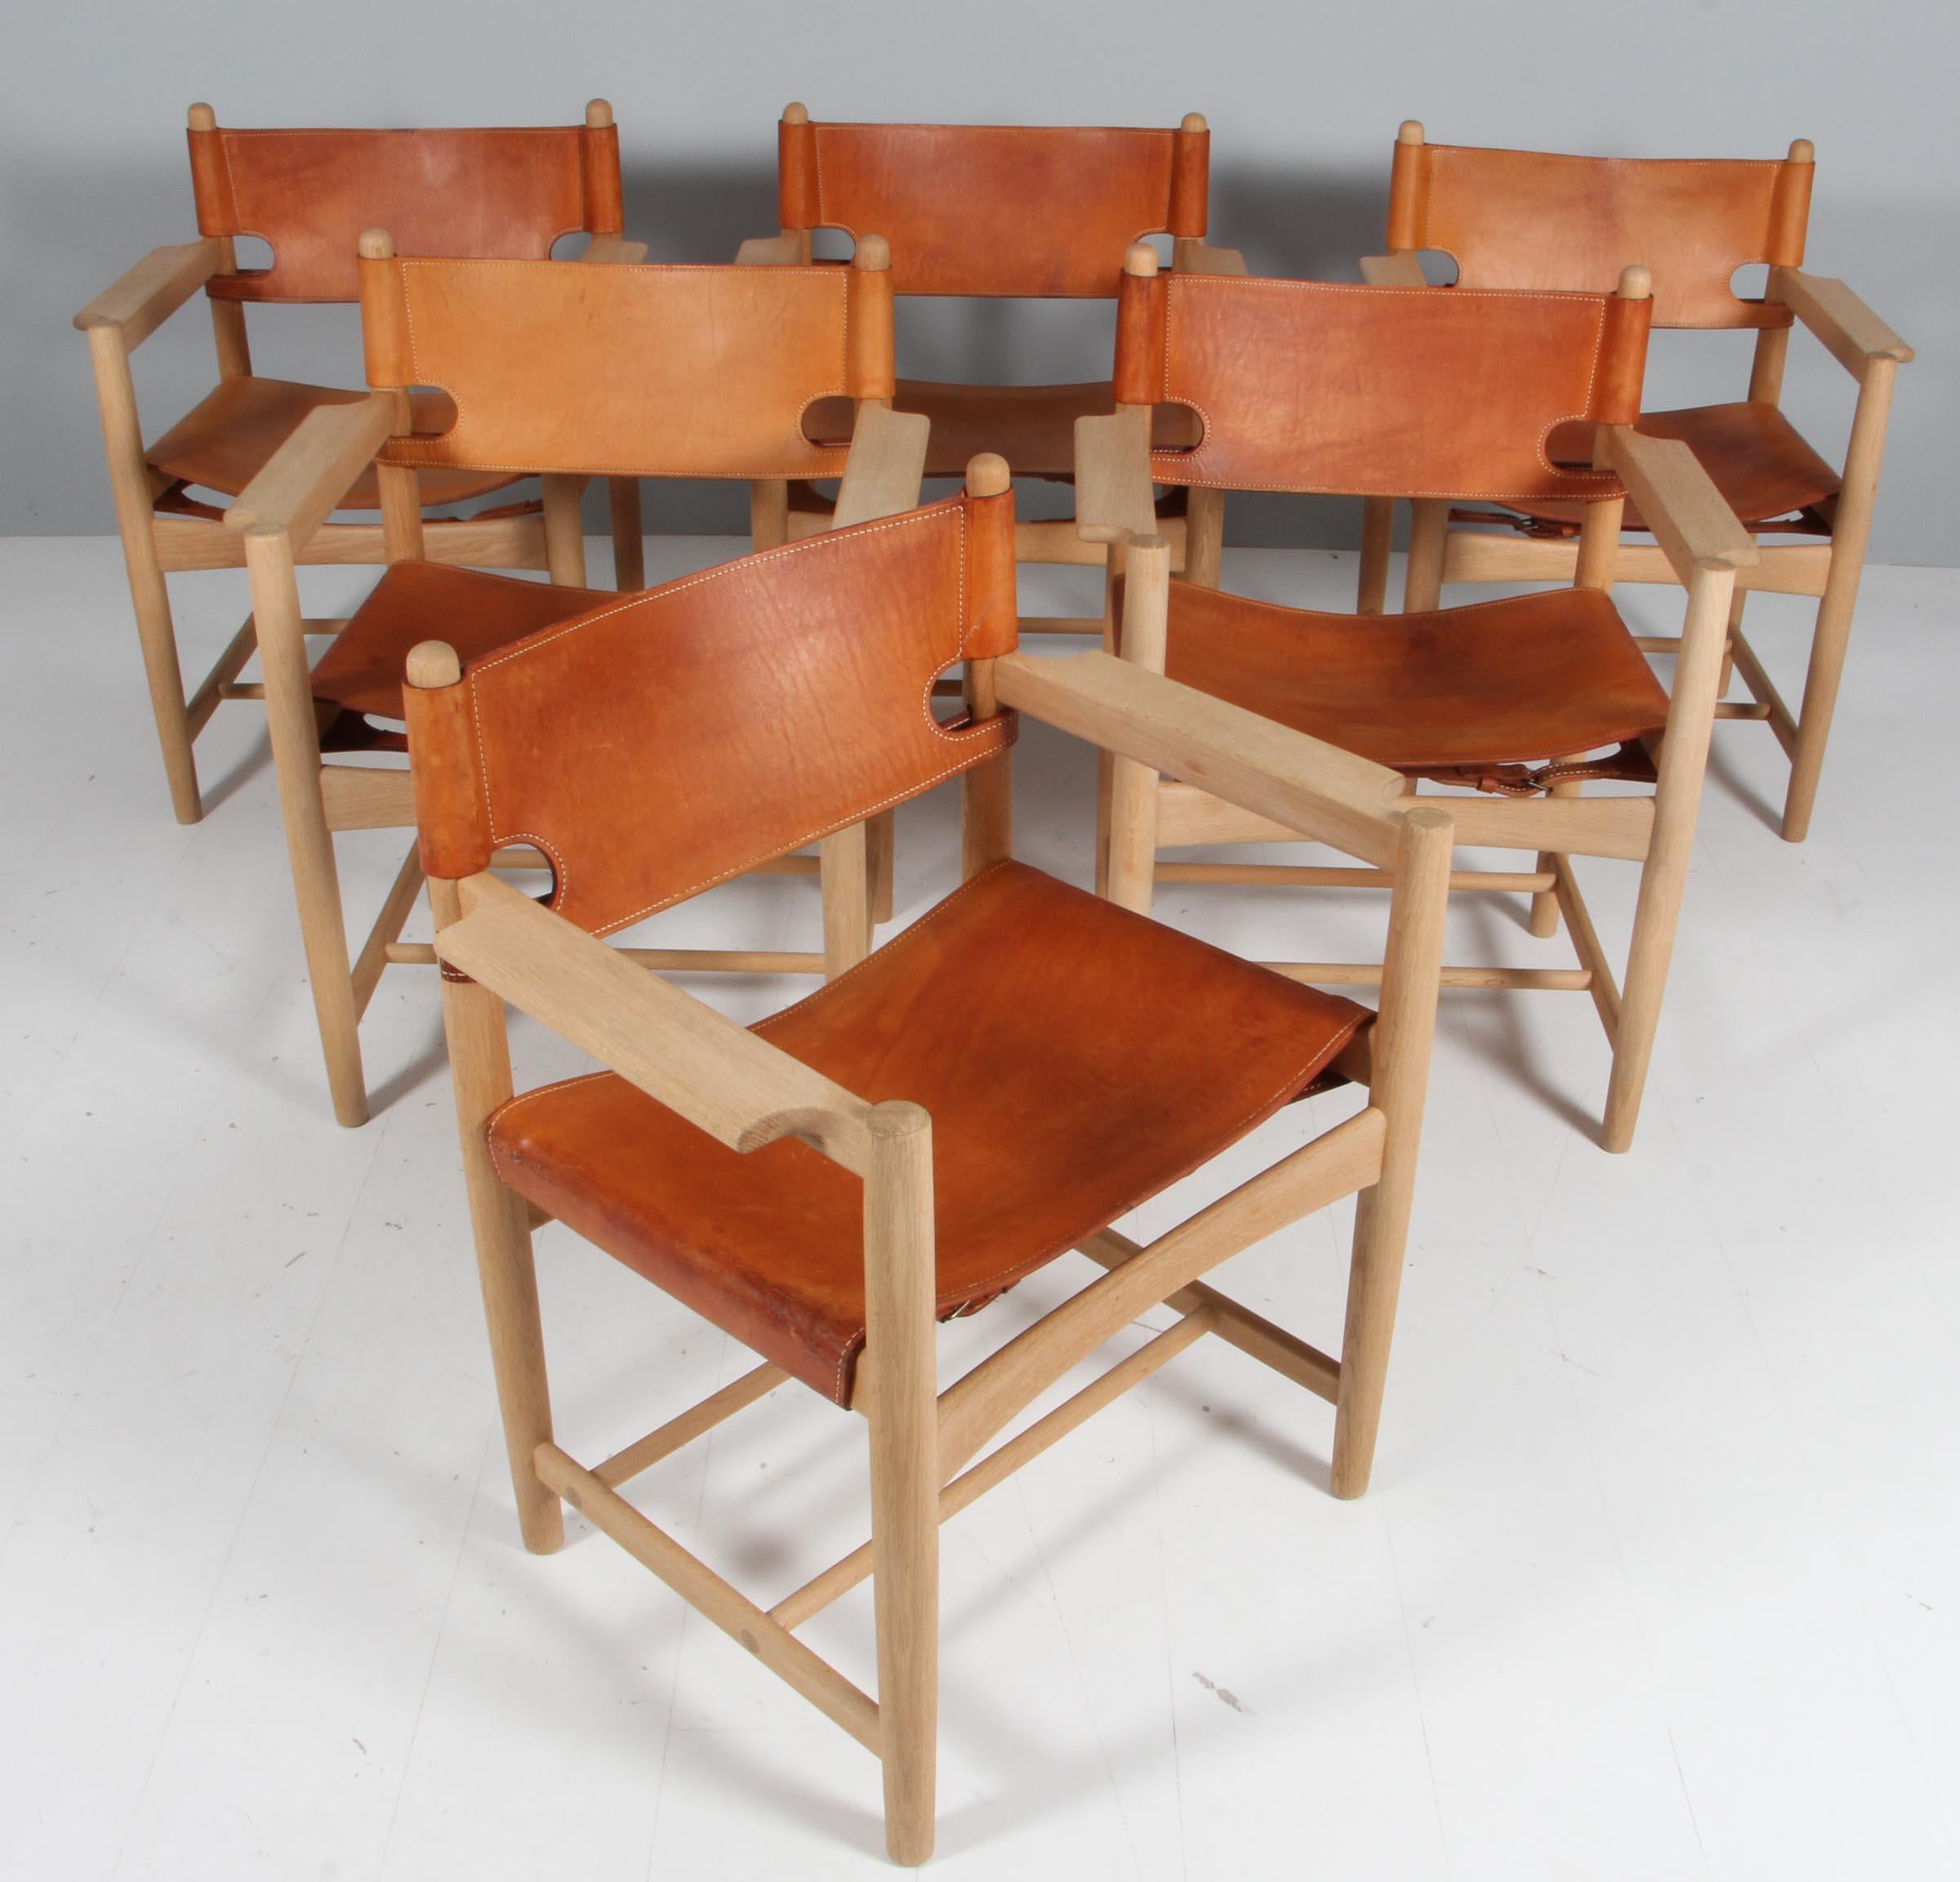 Børge Mogensen für Fredericia Stolefabrik, 6 Sessel Modell 3238, aus Eiche und Leder, Dänemark, 1964.

Satz von sechs Sesseln aus massiver Eiche. Diese Stühle erinnern an die klassischen klappbaren 